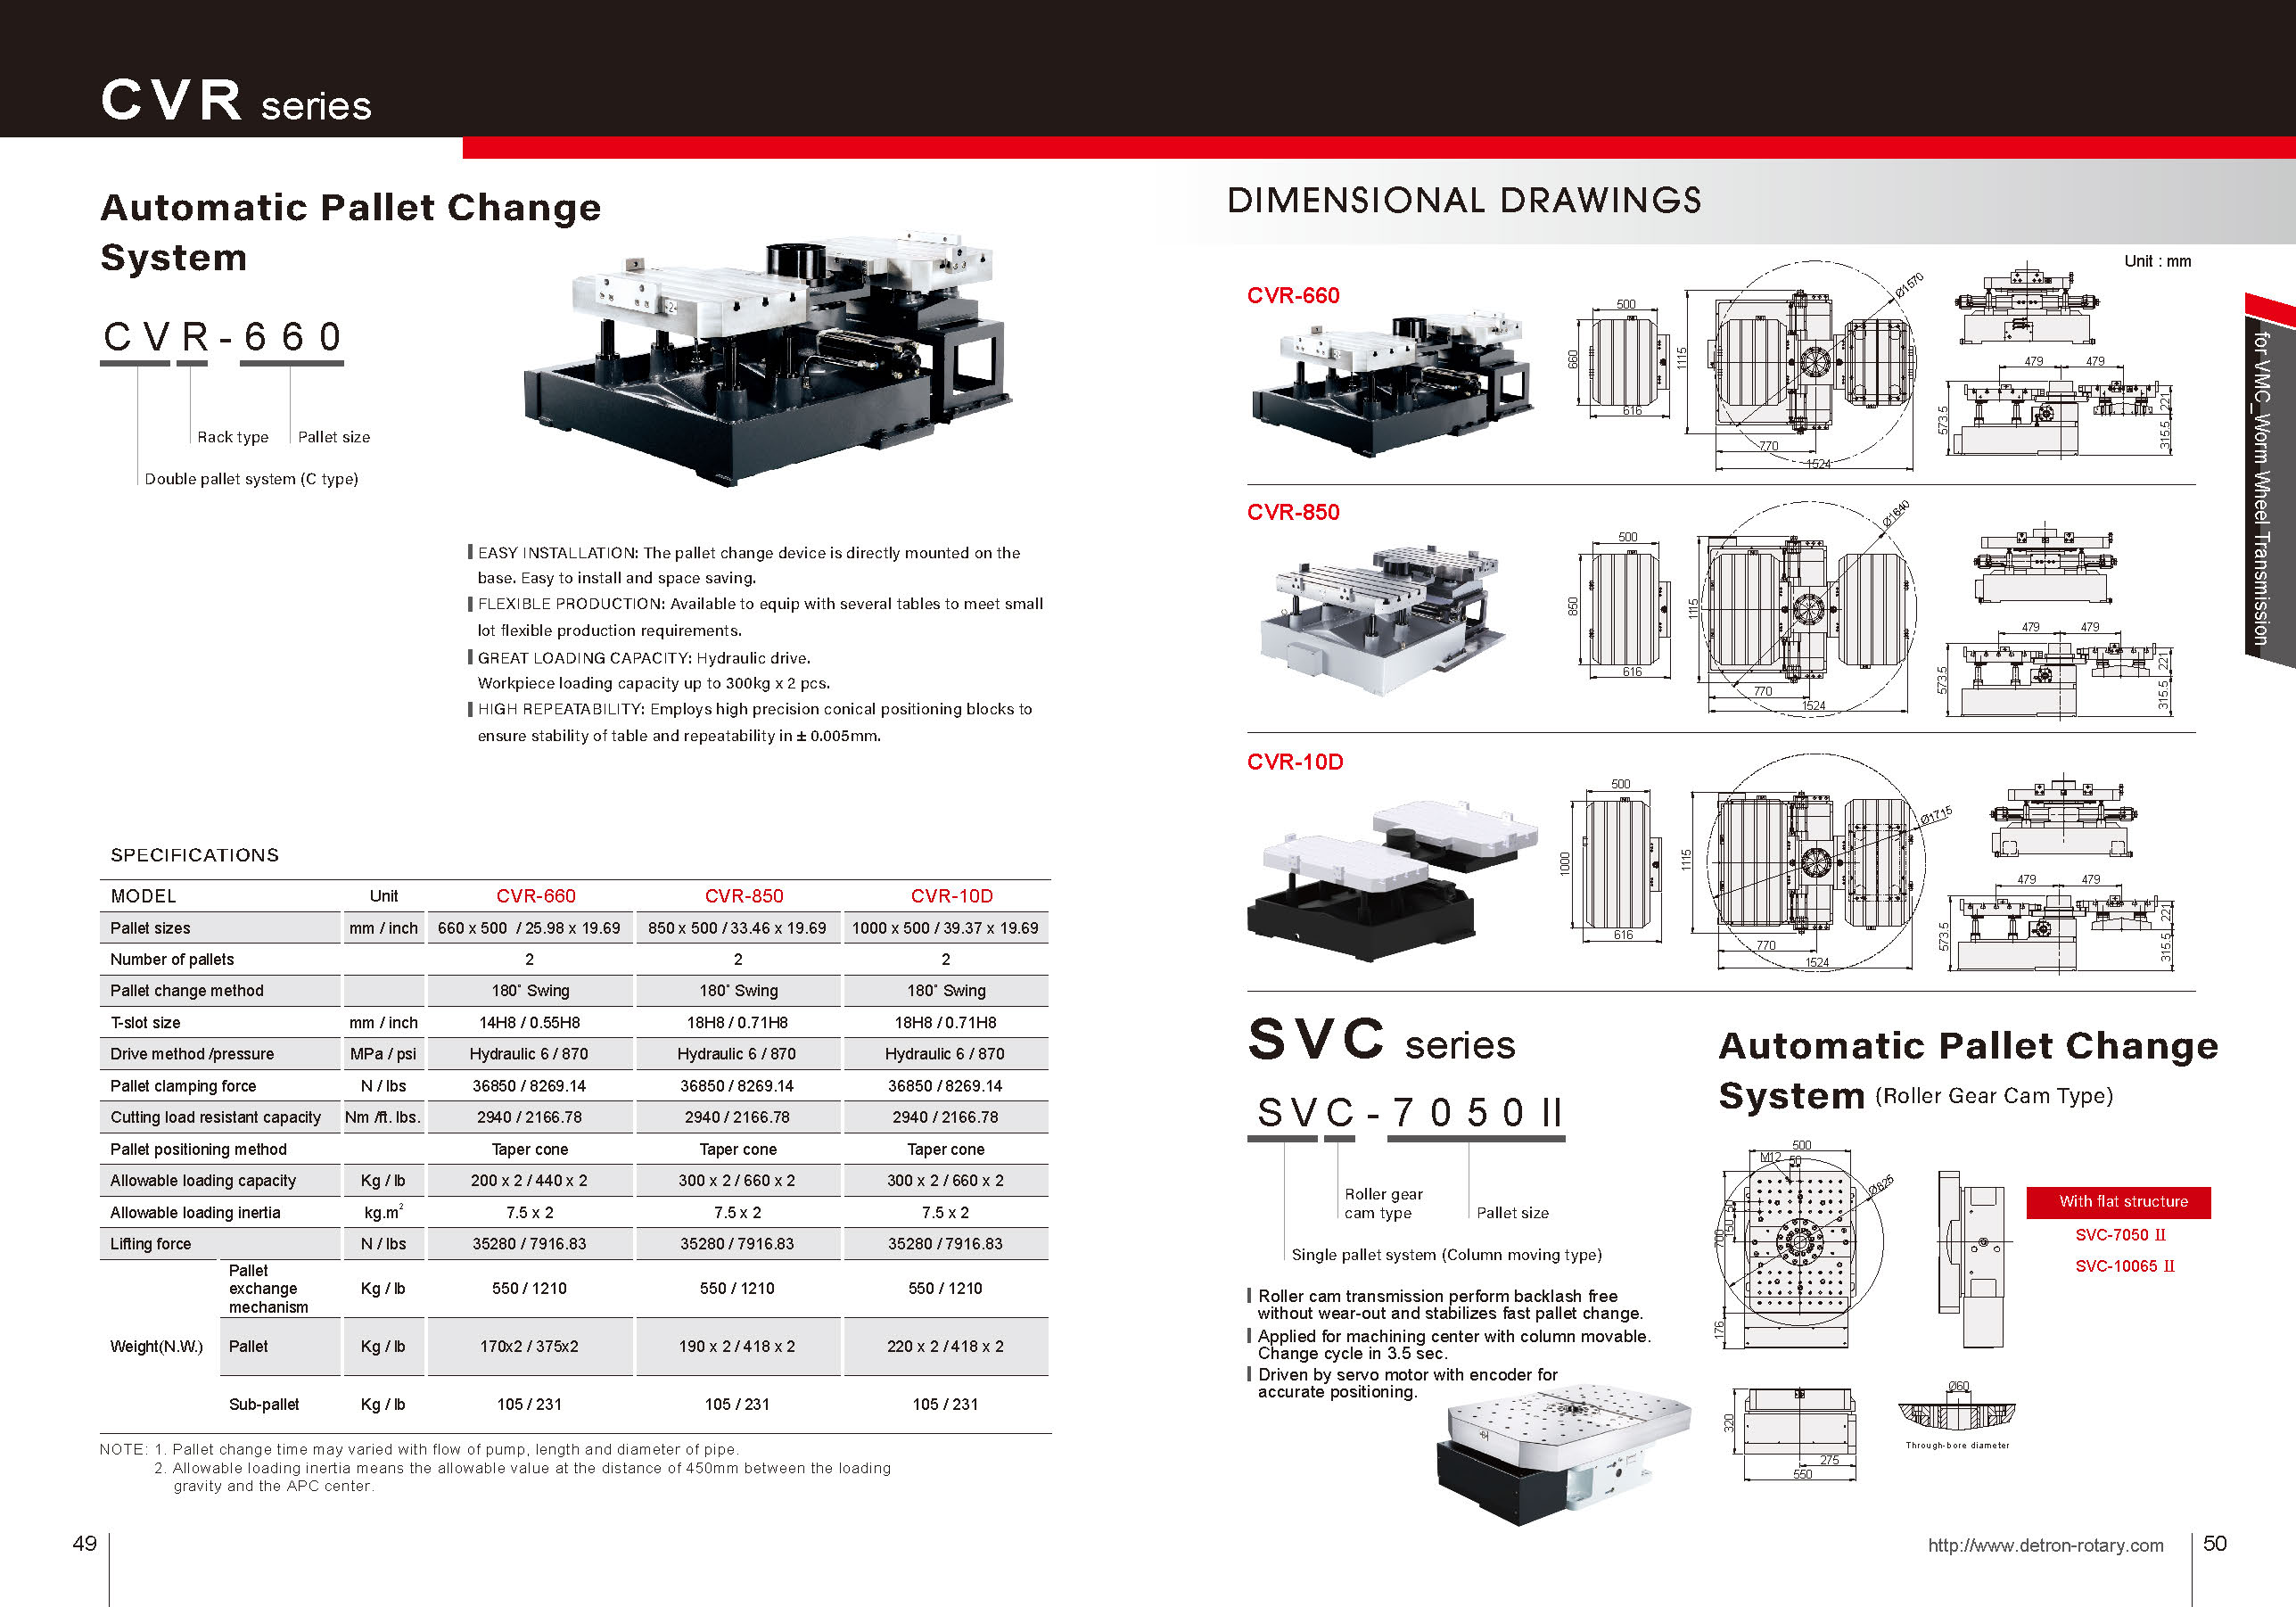 Catalog|EN_(p49-50)_CVR-660 CVR-850 CVR-10D